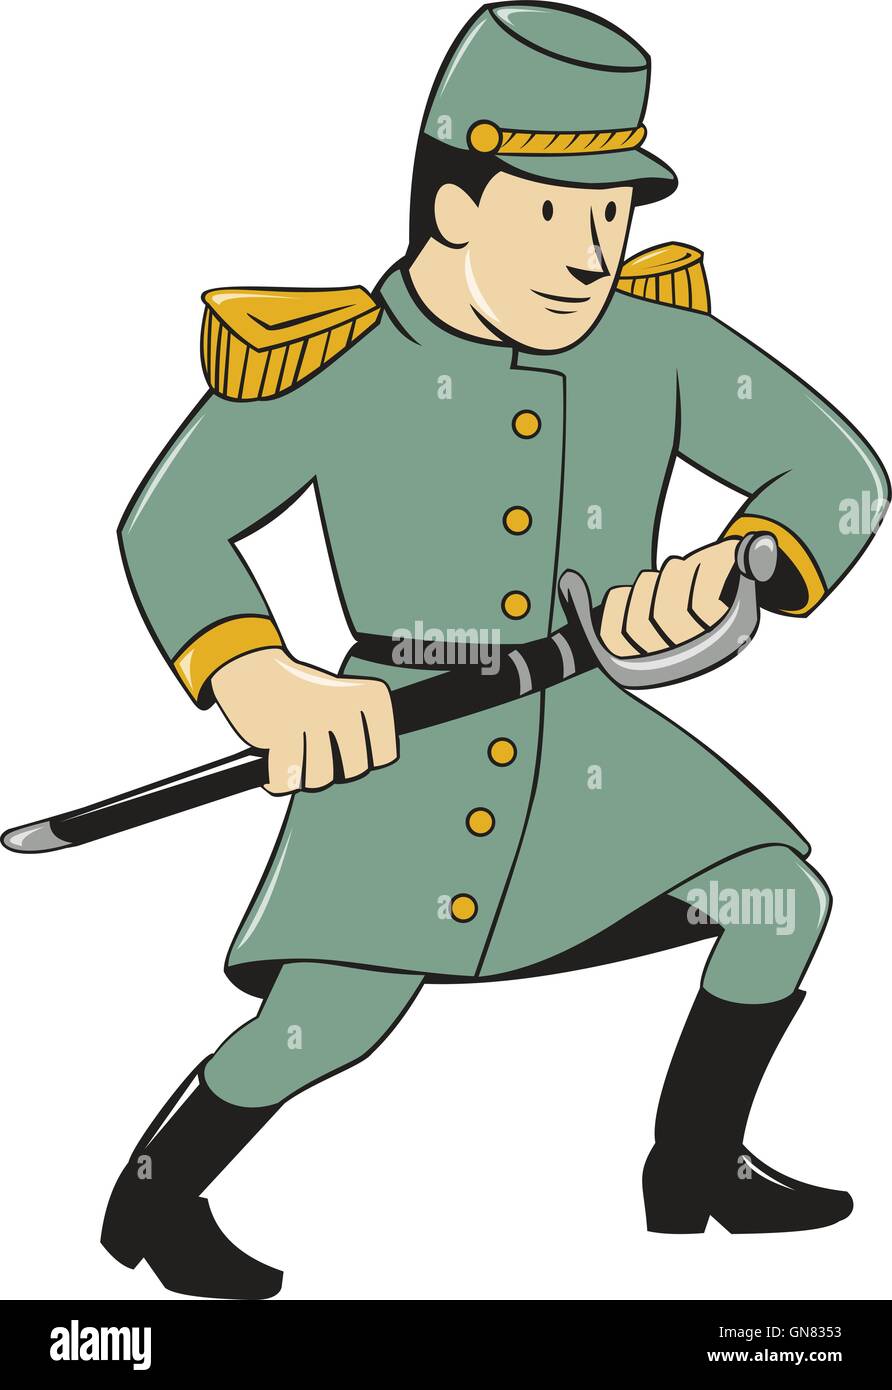 Confederate Army Soldier Drawing Sword Cartoon Stock Vector